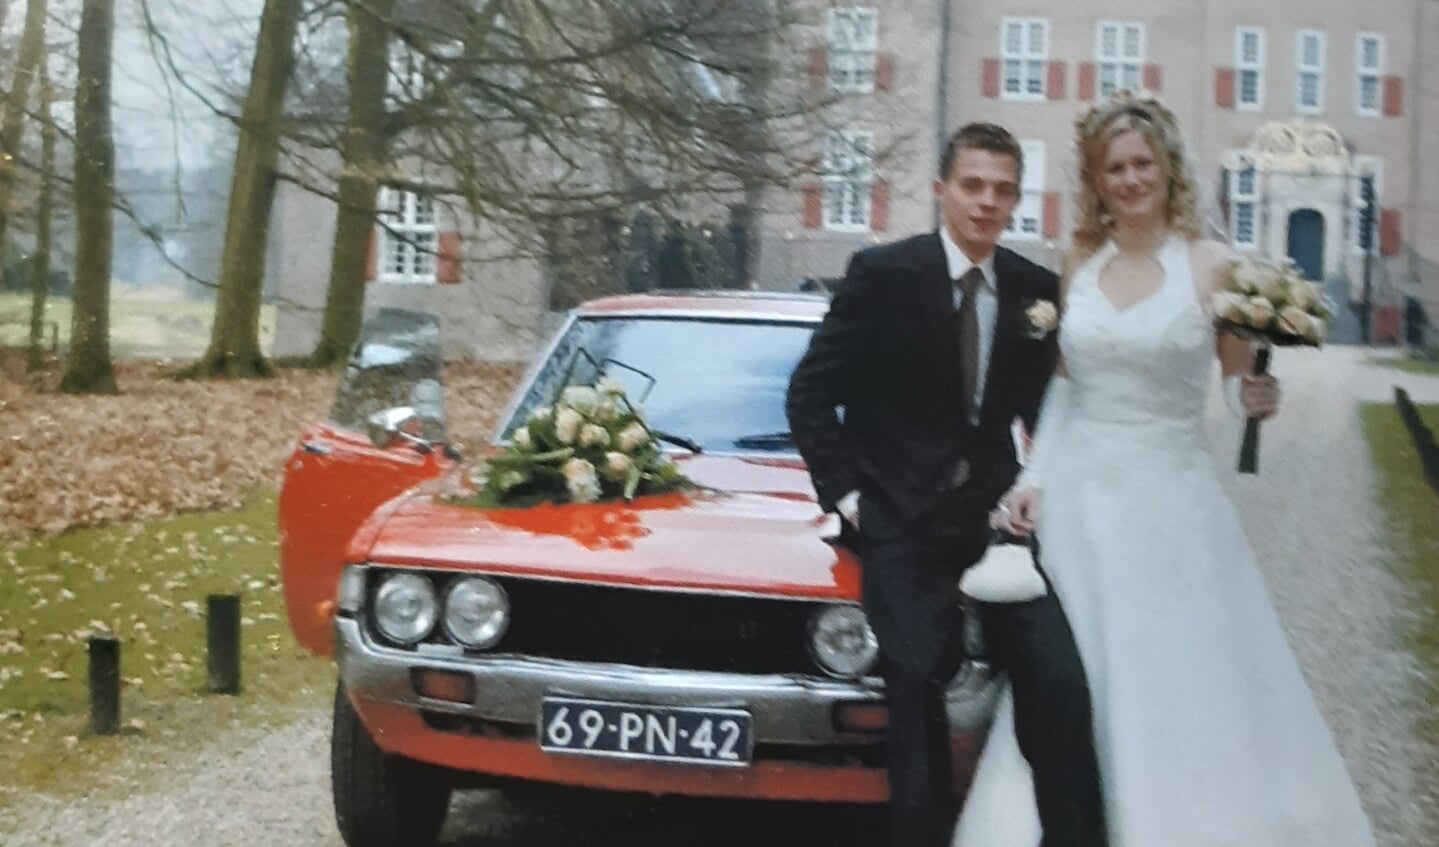 Oedie Steenbeek stapte op 19 maart 2009 in het huwelijksbootje met Aart van de Heg. 